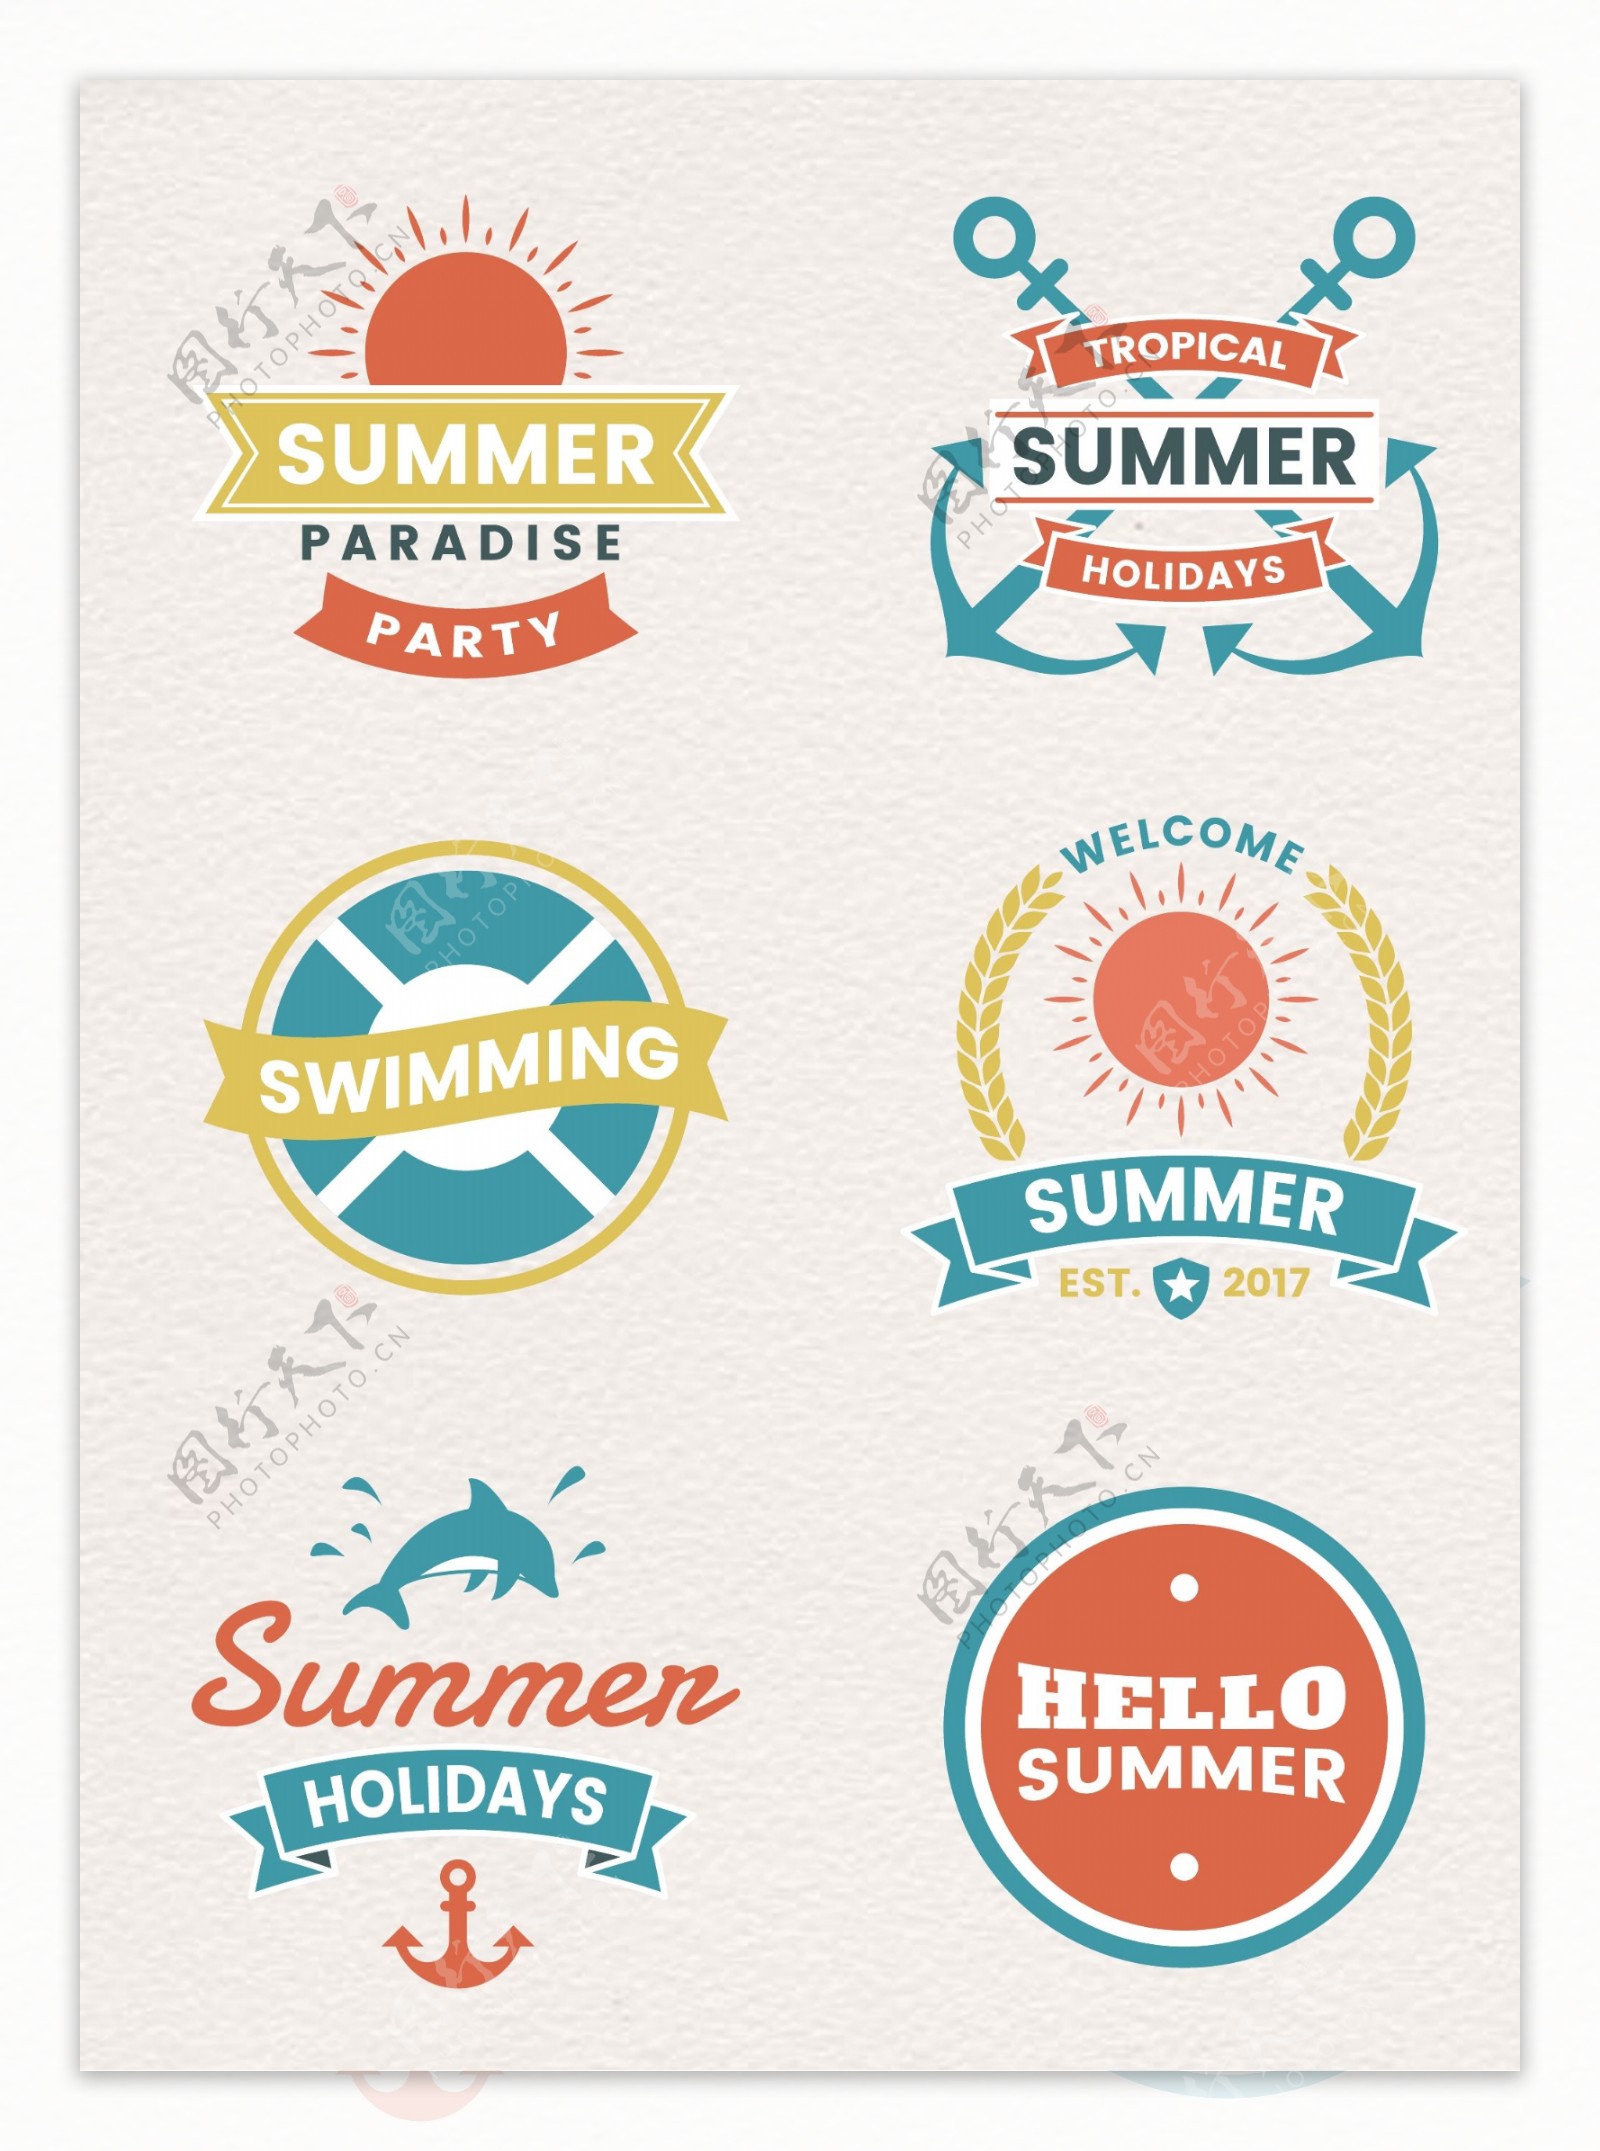 彩色手绘夏日旅行标签设计素材